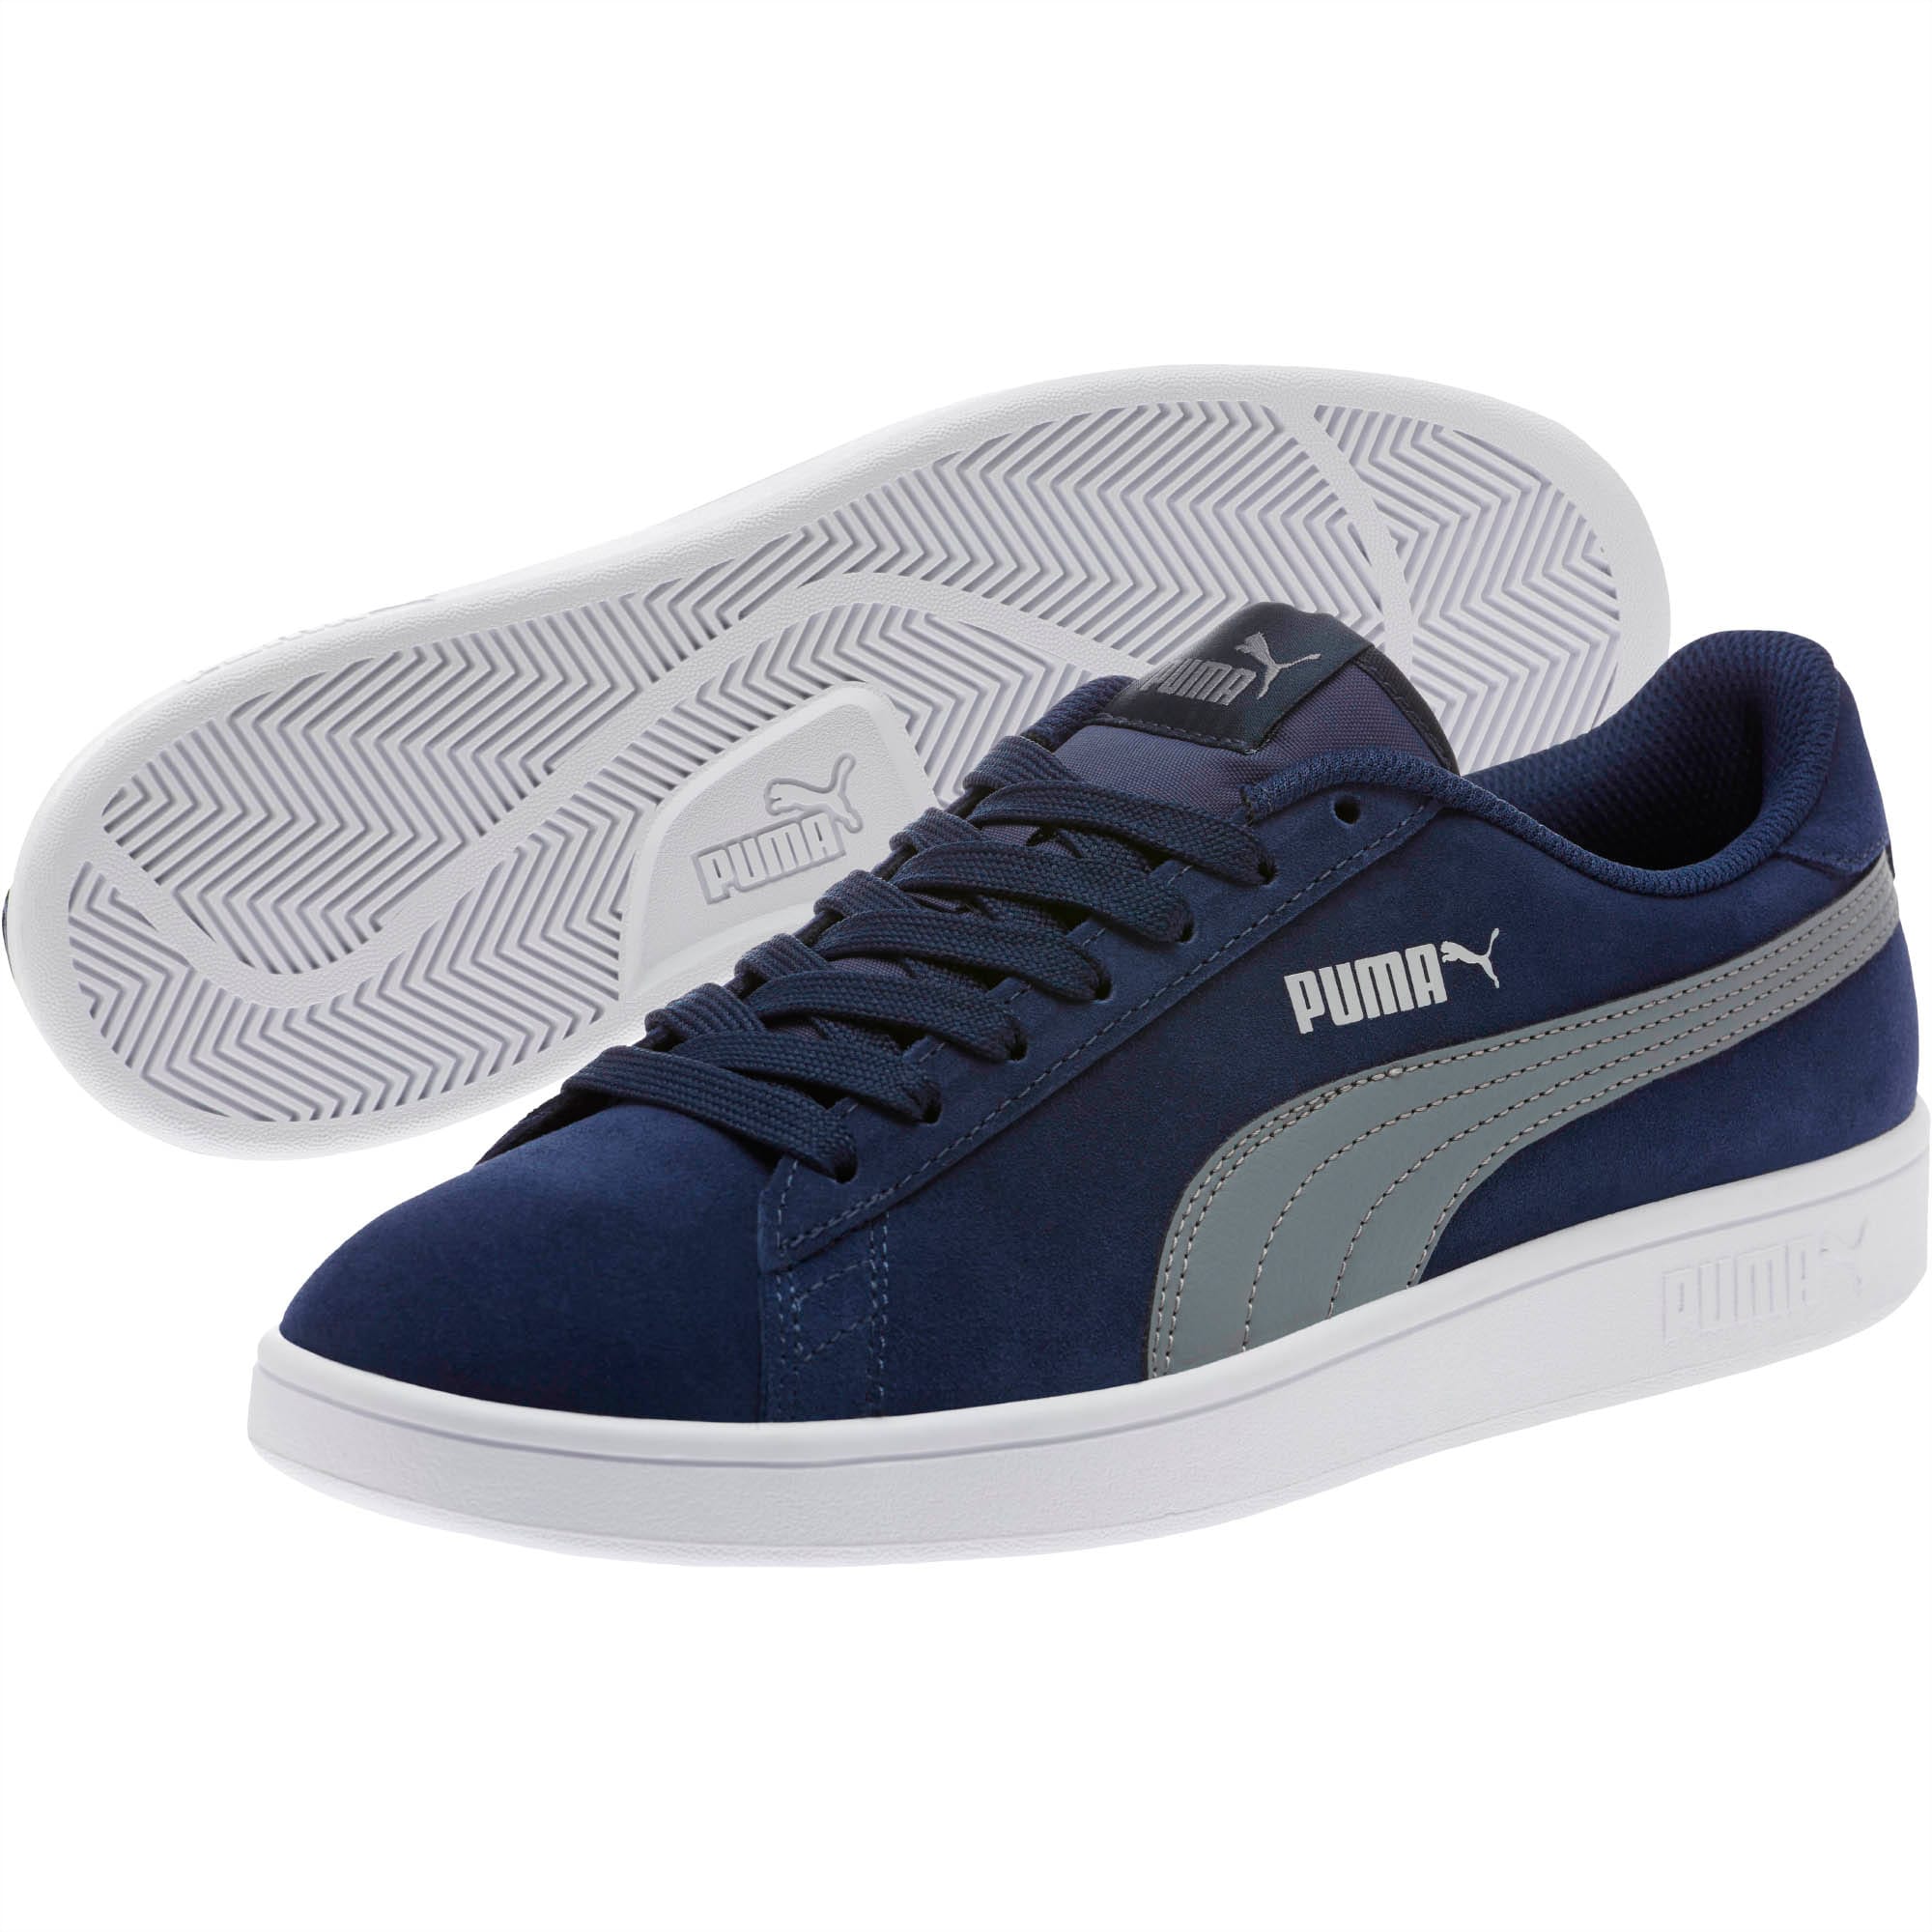 Buy Puma Unisex-Adult Smash v2 Palace Blue-Puma White-Puma Team Gold  Sneaker - 4 UK (36498940) at